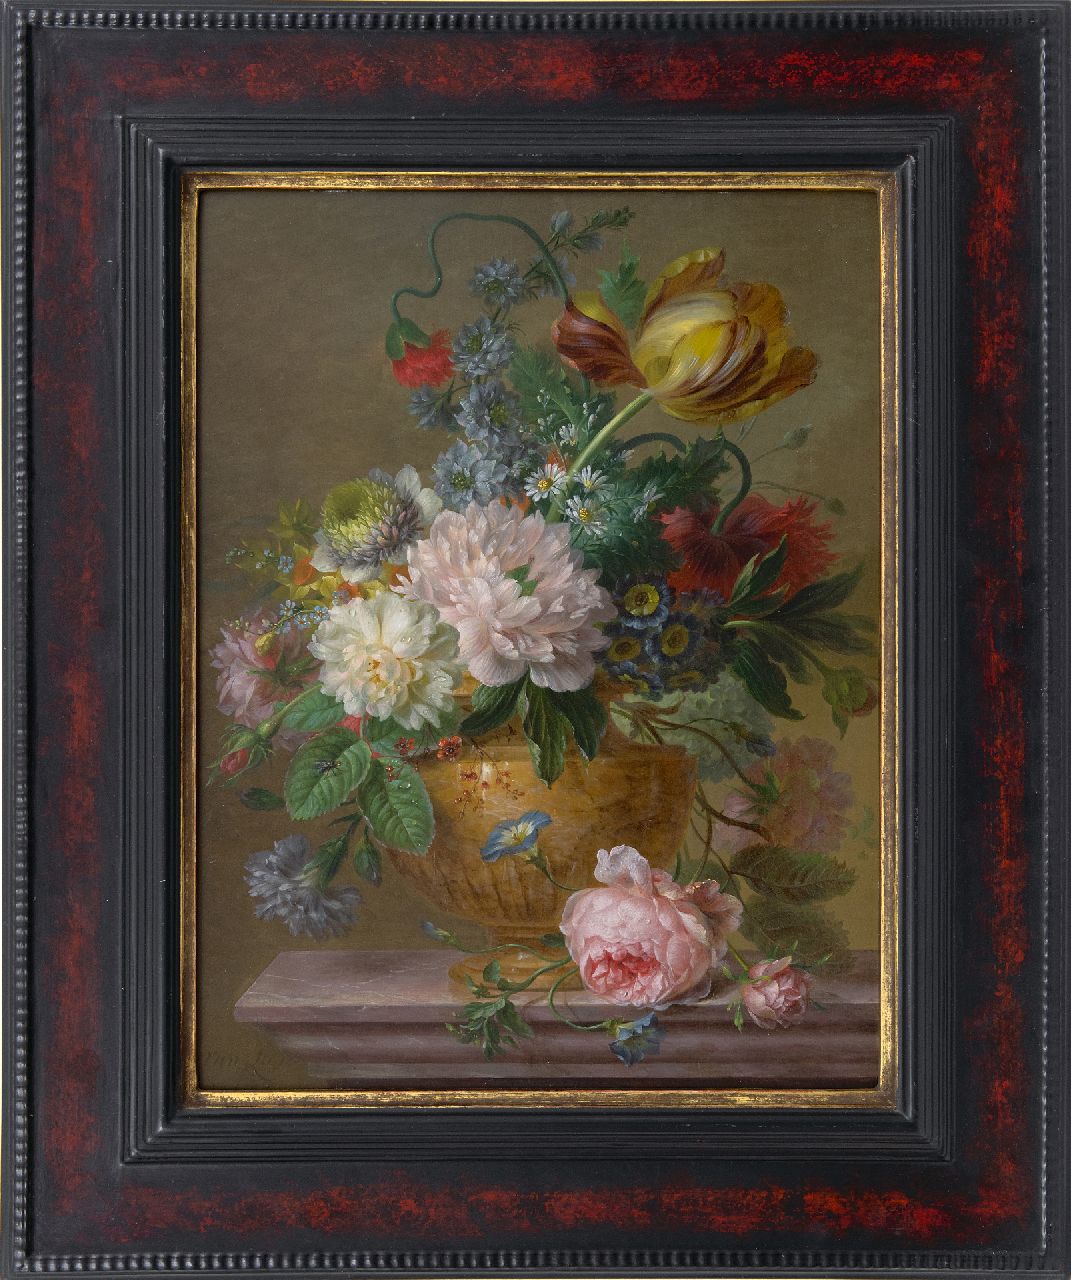 Leen W. van | Willem van Leen, Bloemstilleven met pioenrozen en tulpen, olieverf op paneel 48,8 x 36,7 cm, gesigneerd linksonder